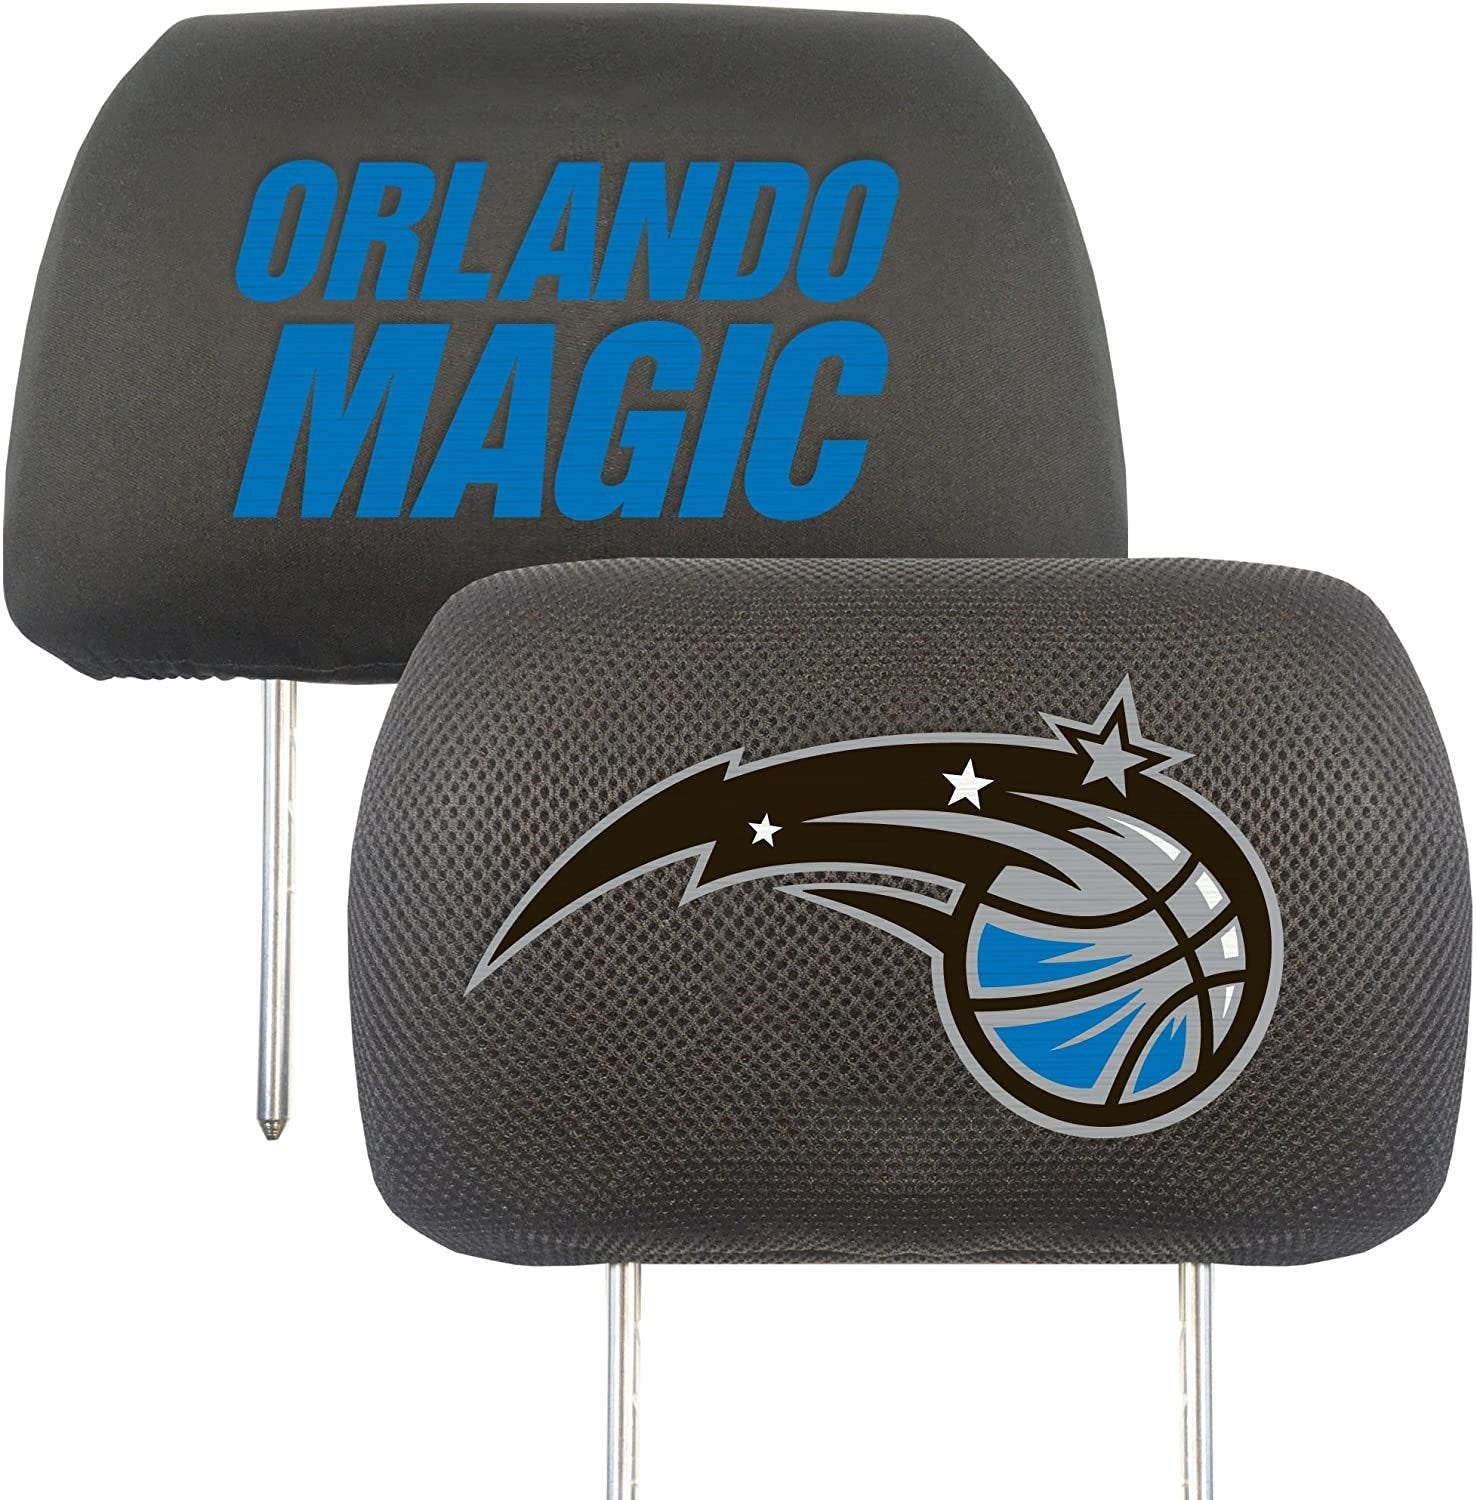 Orlando Magic Pair of Premium Auto Head Rest Covers, Embroidered, Black Elastic, 14x10 Inch